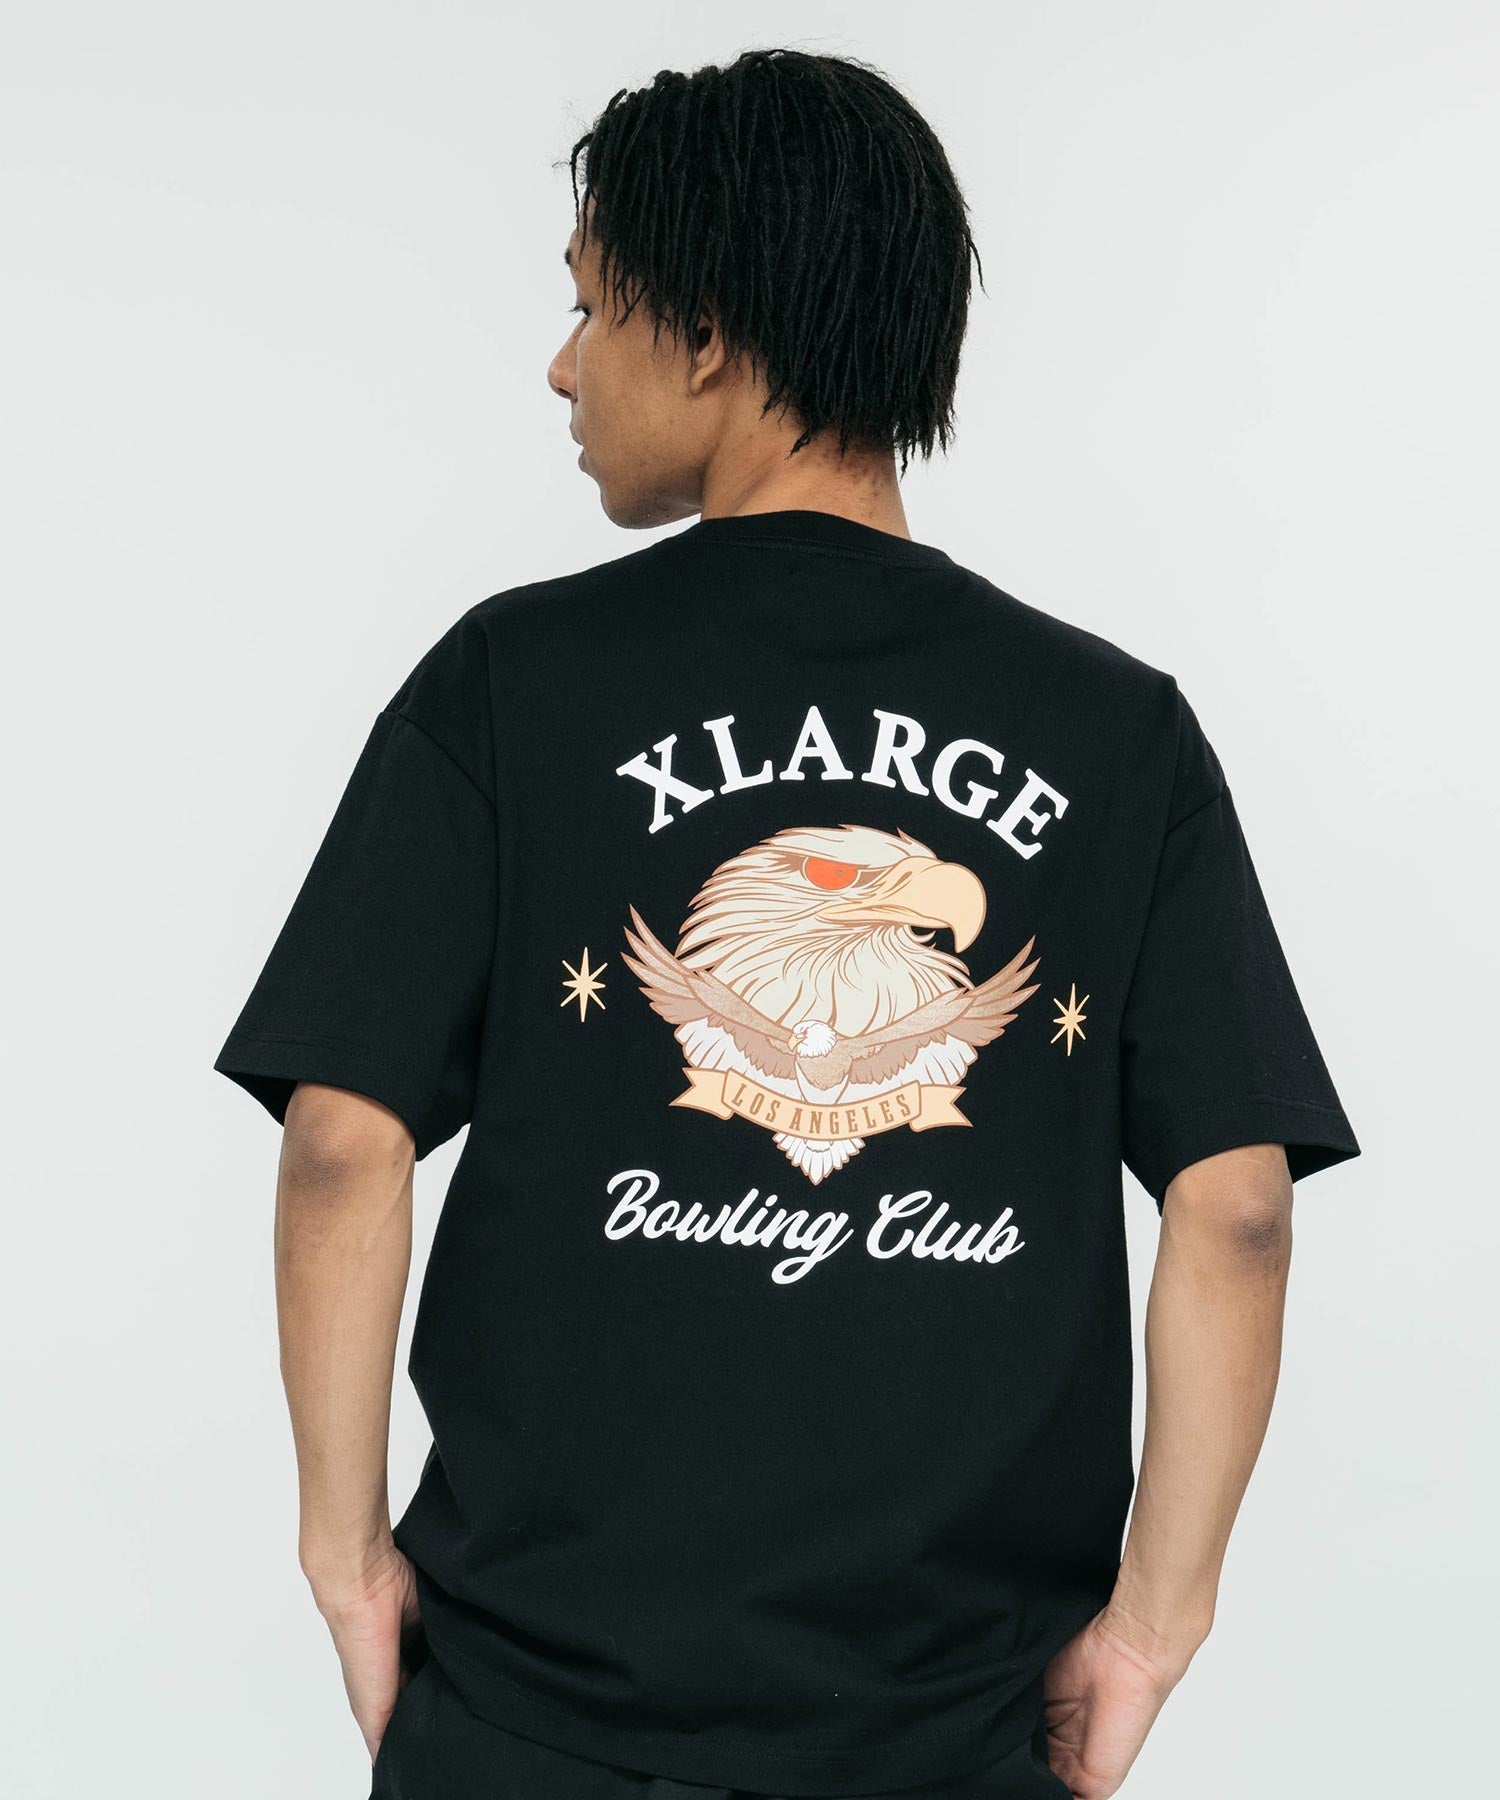 เสื้อยืดแขนสั้น XLARGE รุ่น Bowling Club S/S Tee